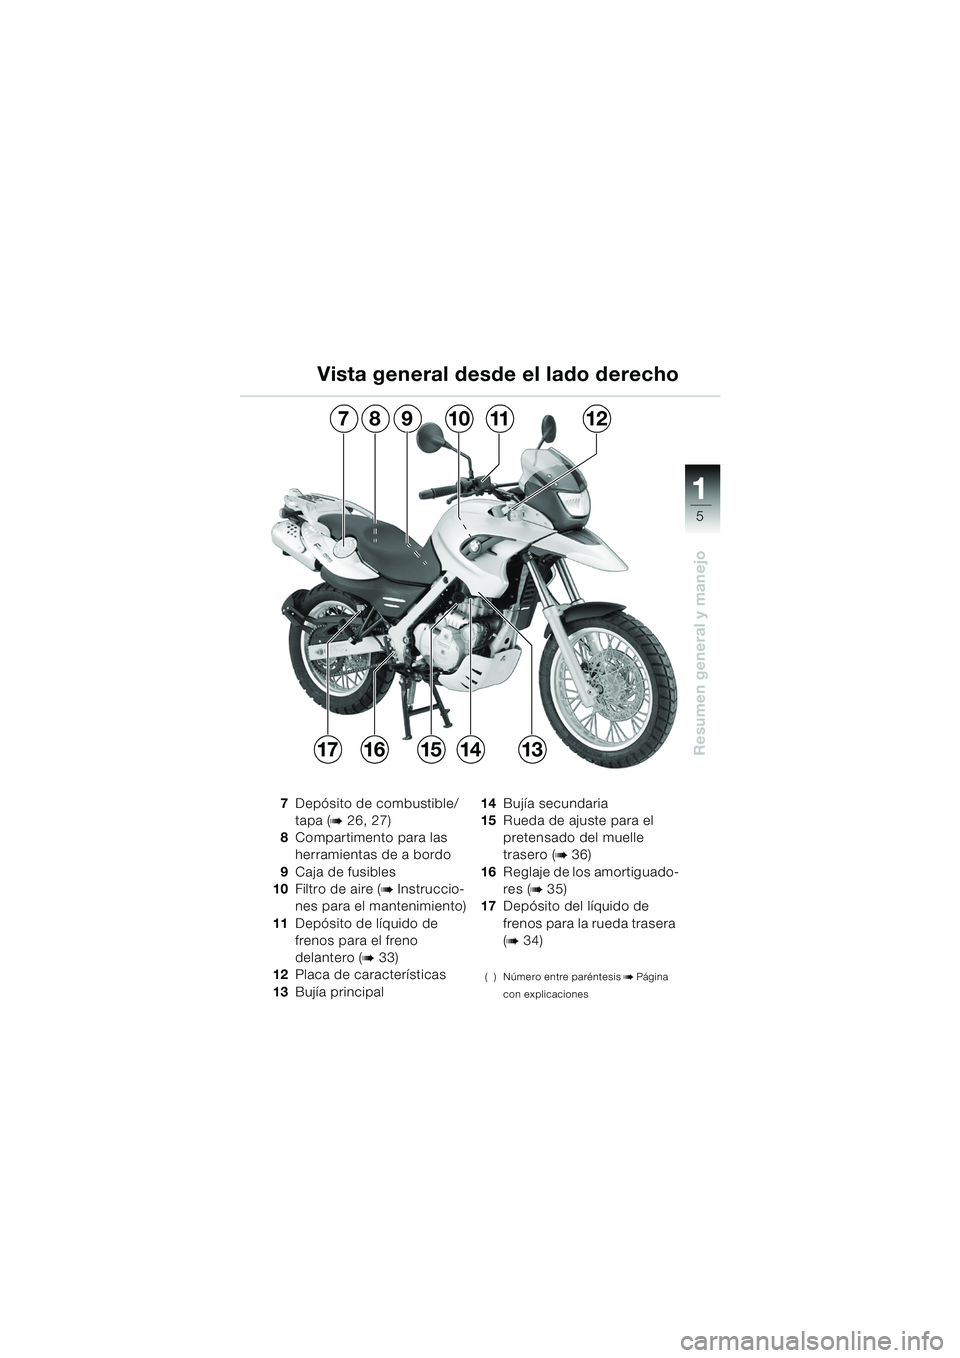 BMW MOTORRAD F 650 GS DAKAR 2003  Manual de instrucciones (in Spanish) 111
5
Resumen general y manejo
Vista general desde el lado derecho
7Depósito de combustible/
tapa (
b 26, 27)
8 Compartimento para las 
herramientas de a bordo
9 Caja de fusibles
10 Filtro de aire (
